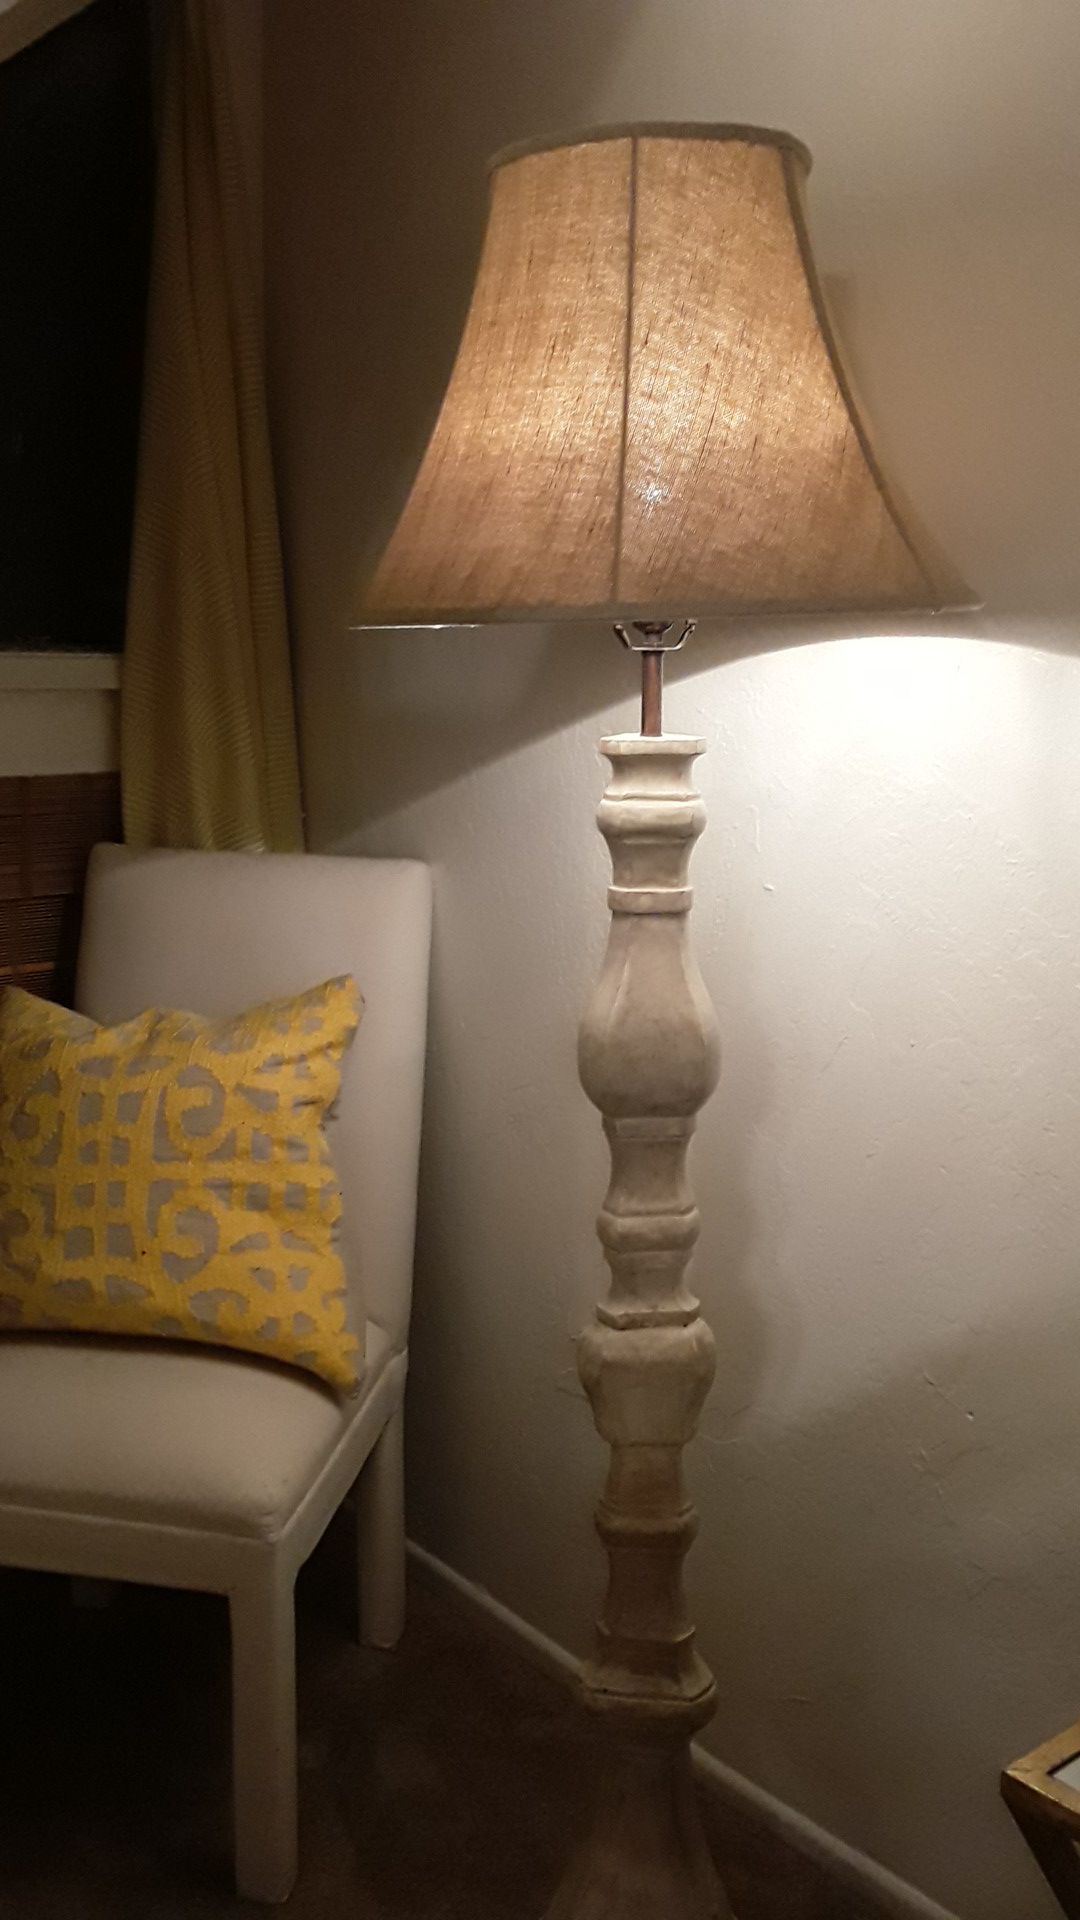 Super beautiful antique finish lamp